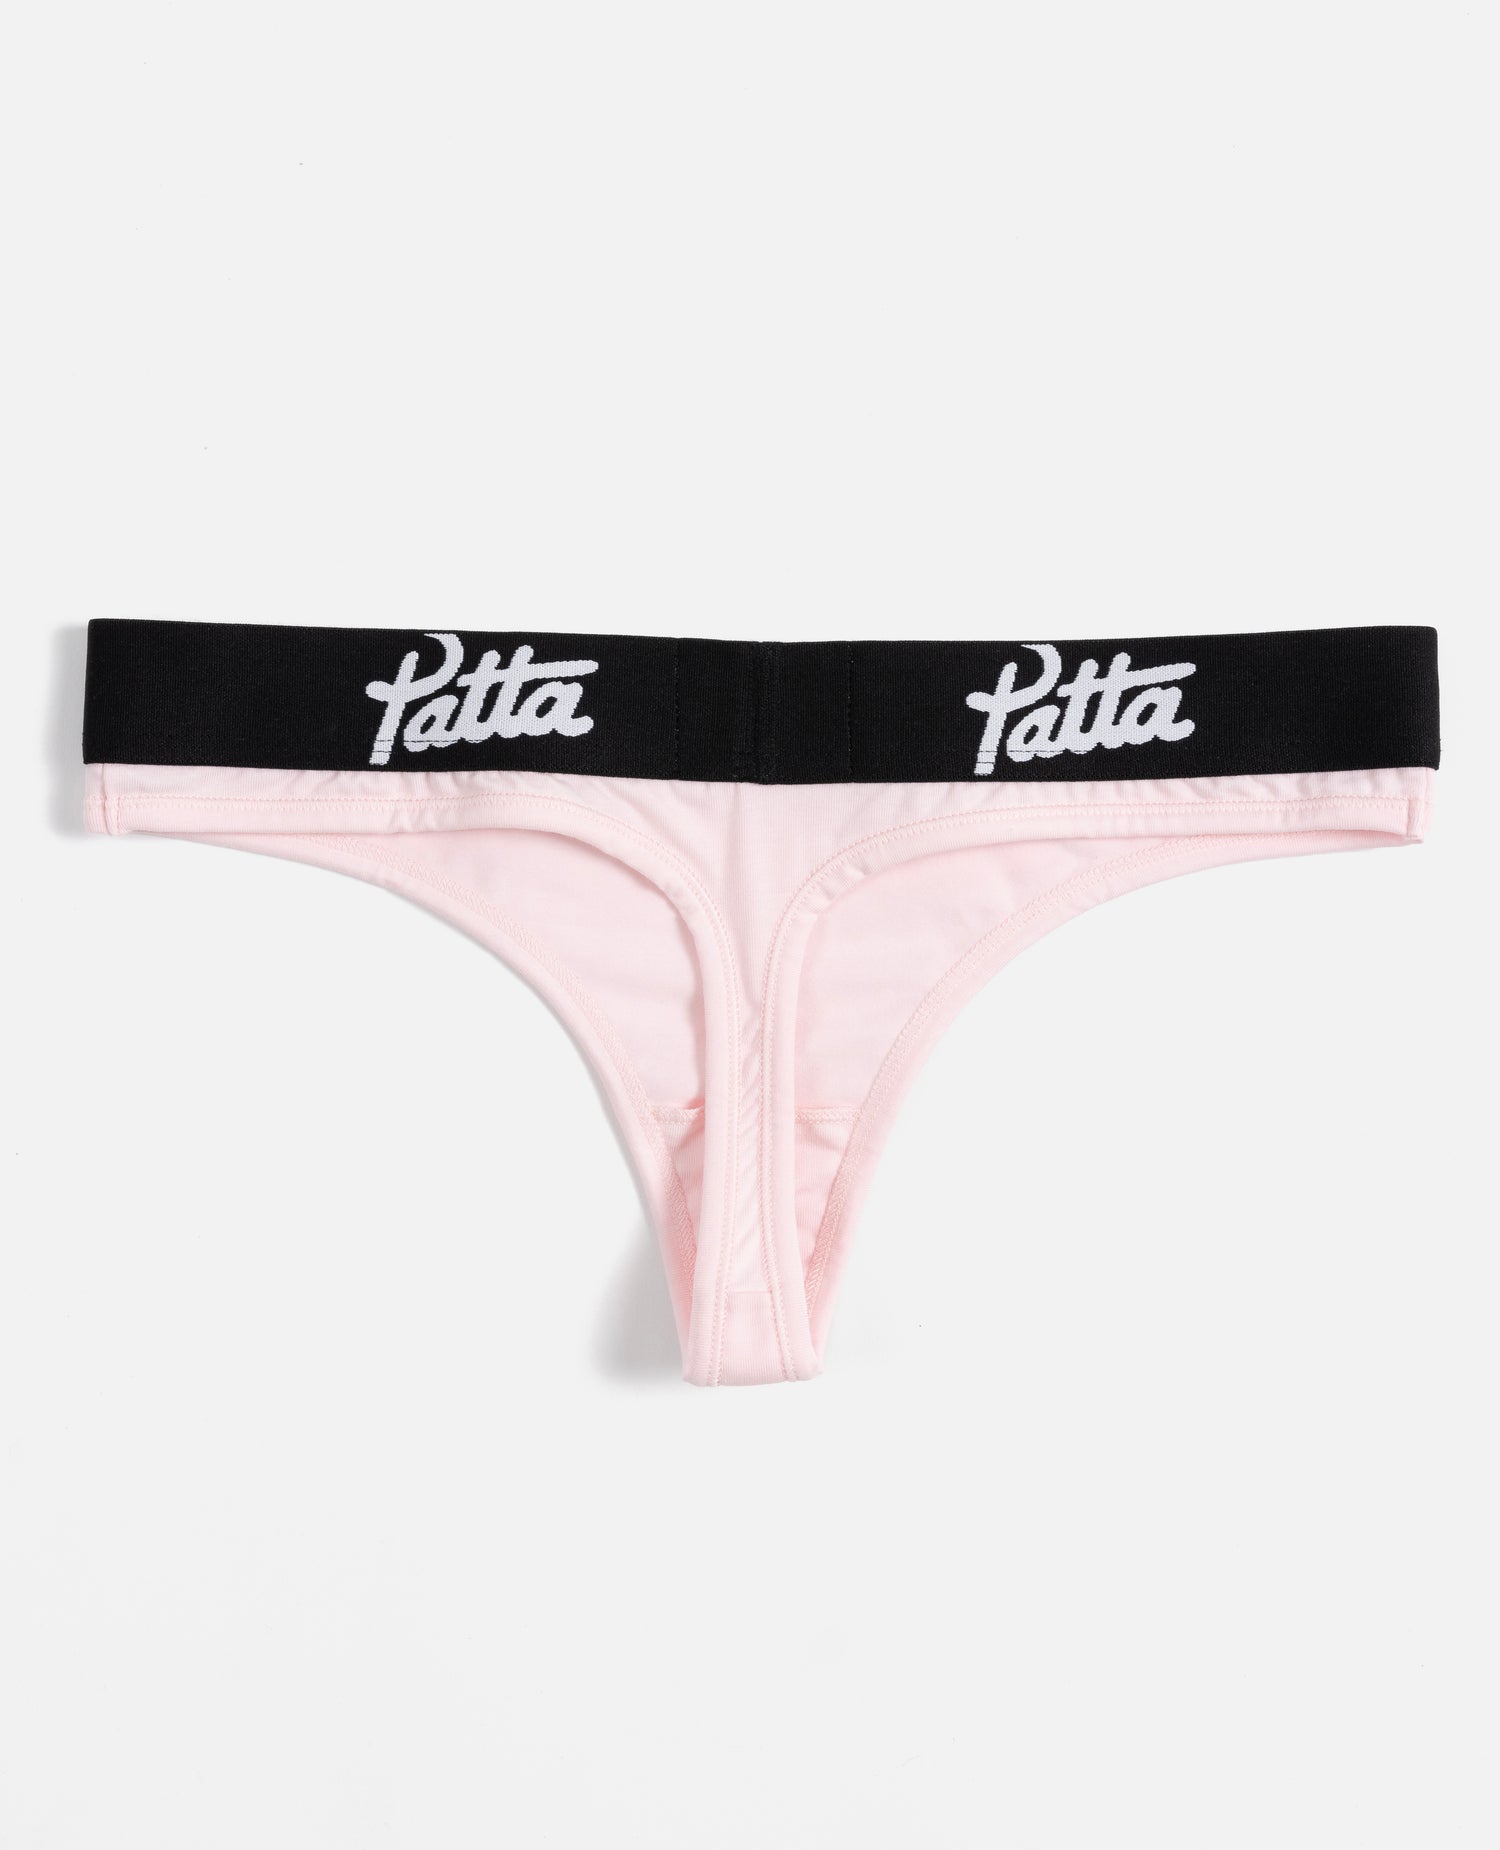 Patta Underwear Women Thong (Cradle Pink)